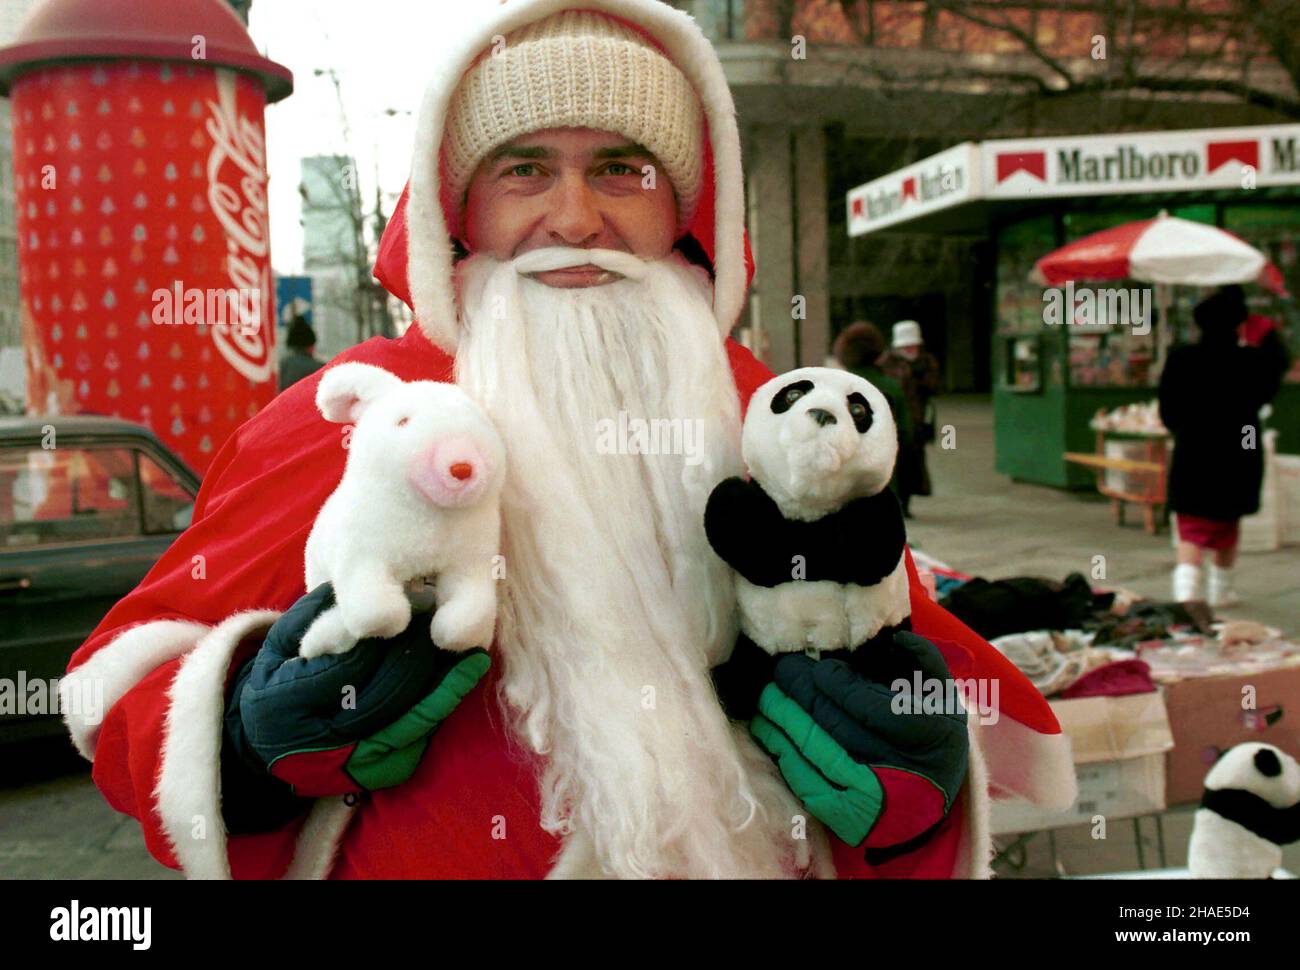 Warszawa, 05.12.1995. Œwiêty Miko³aj na ulicach Warszawy. (kru) PAP/Adam Urbanek      Warsaw, 05.12.1995. Santa Claus in Warsaw. (kru) PAP/Adam Urbanek Stock Photo